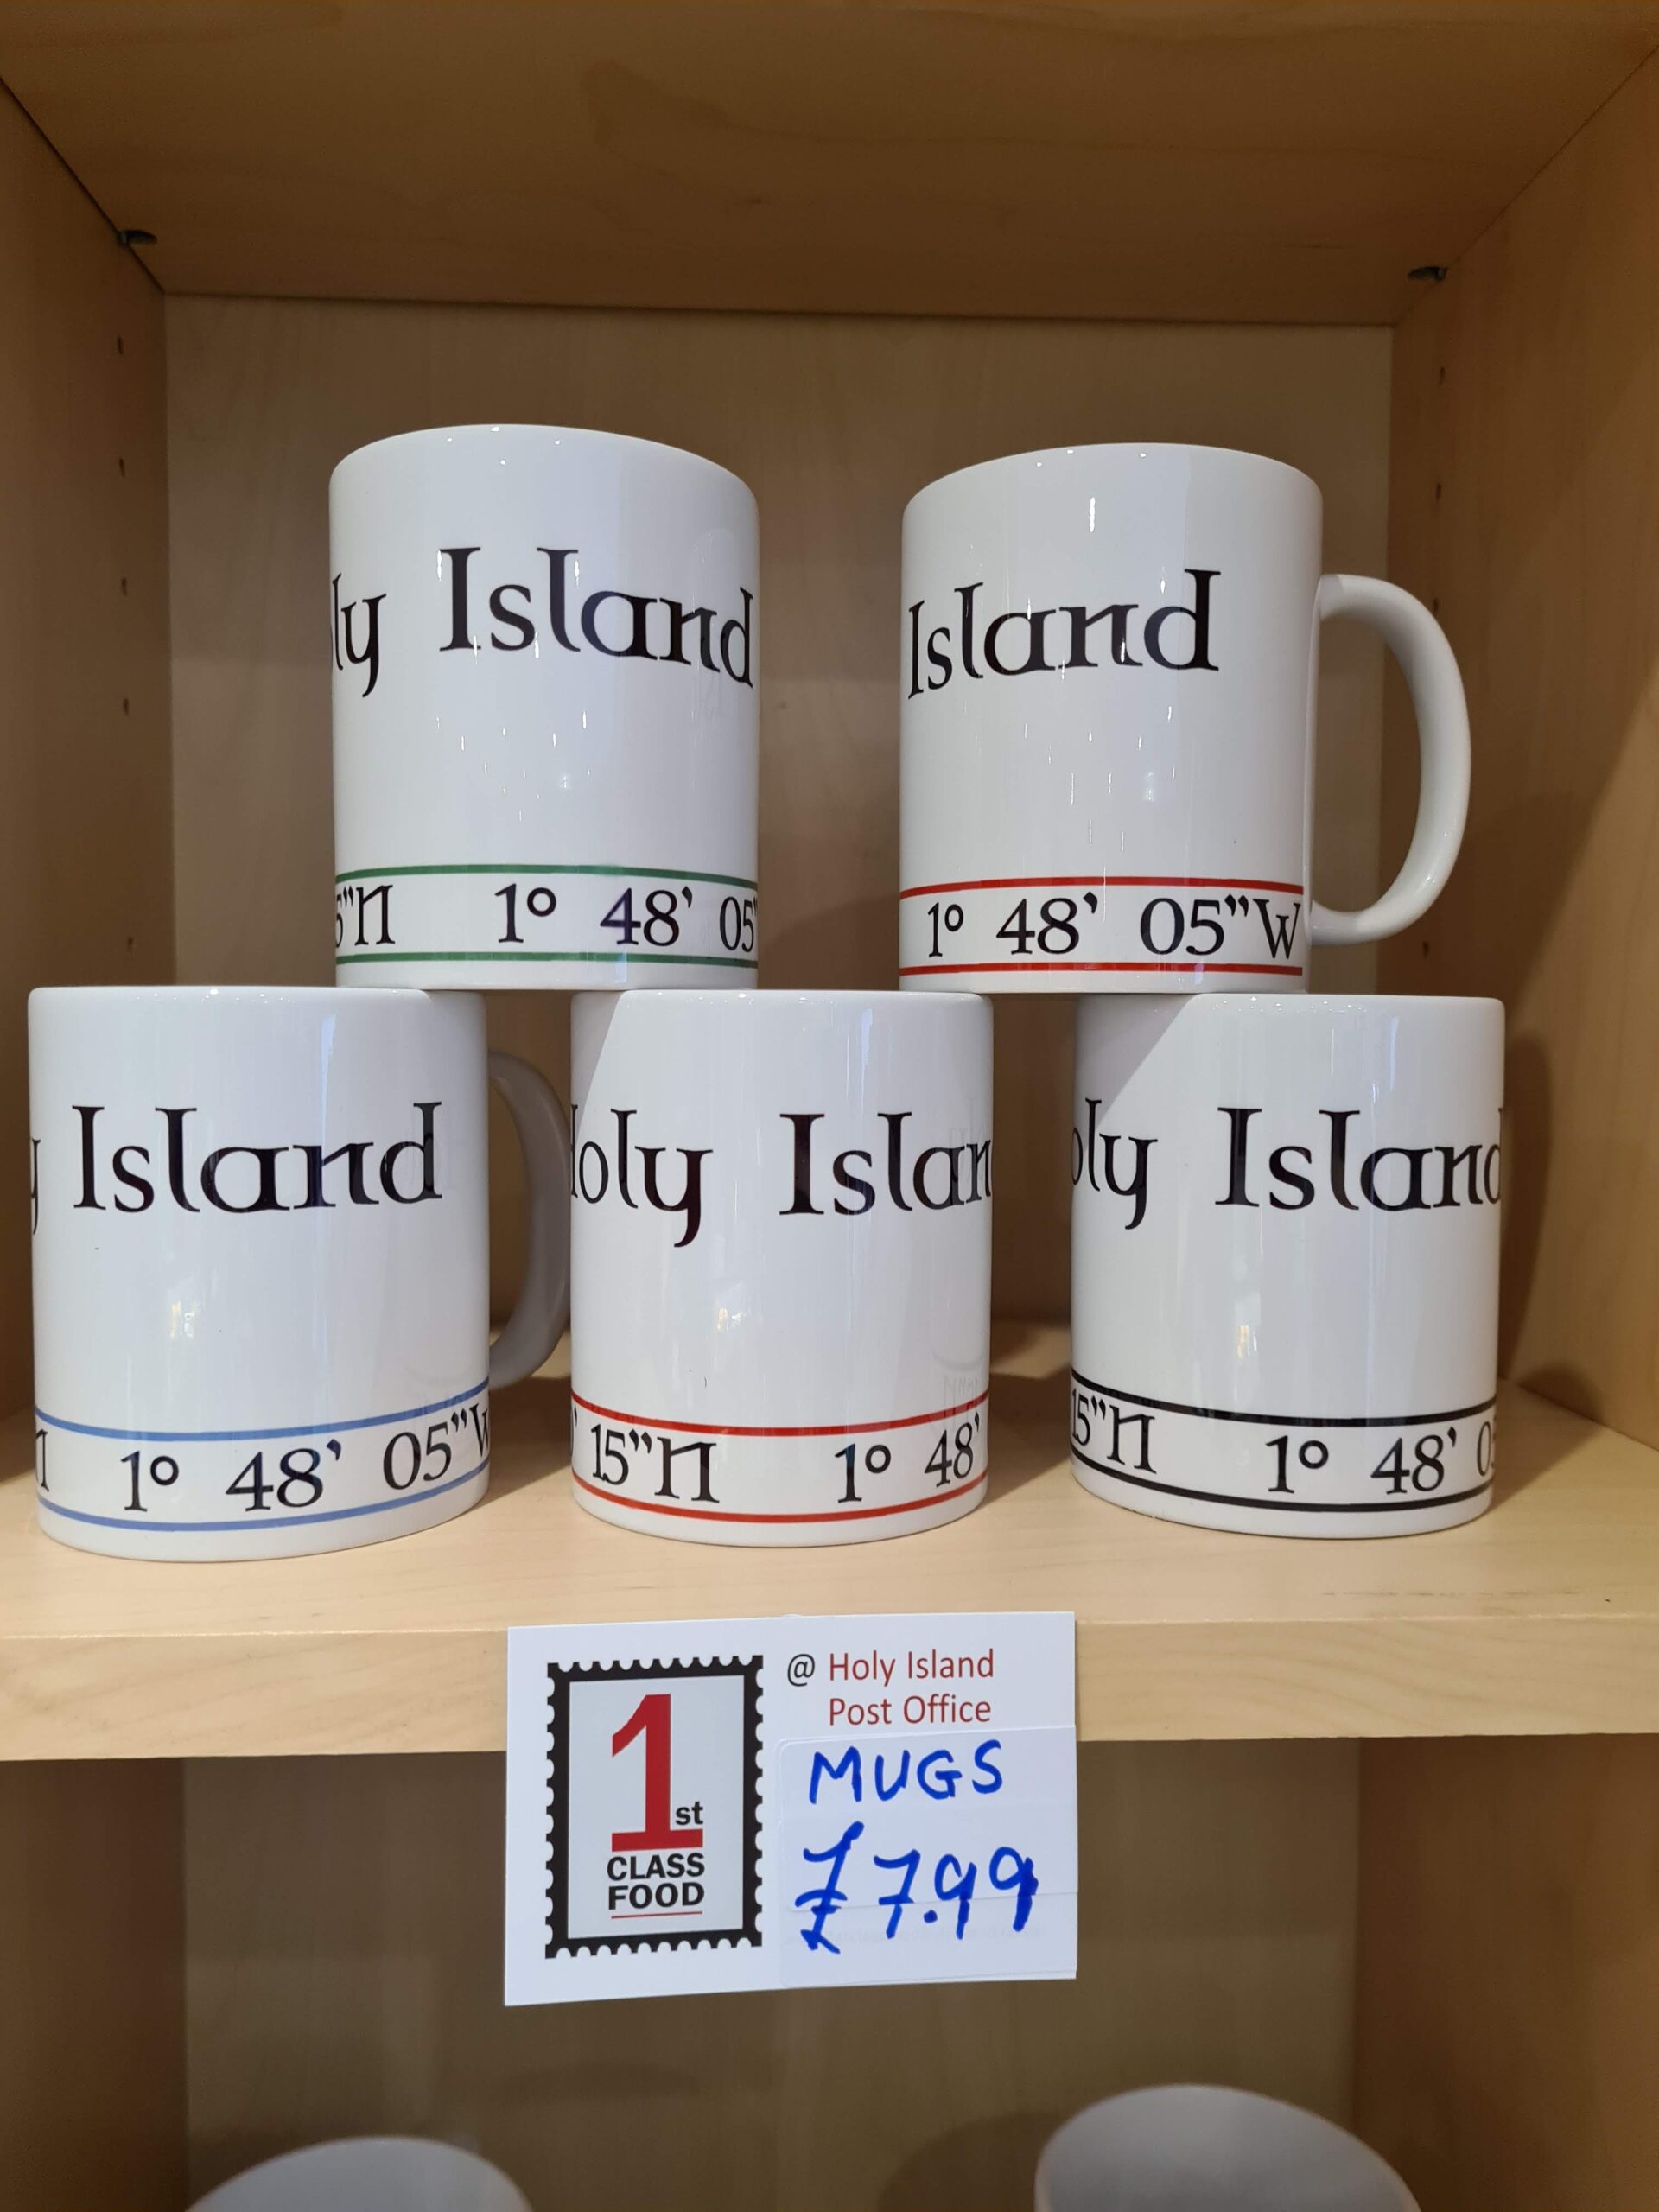 1st Class Food Holy Island Shop Mugs